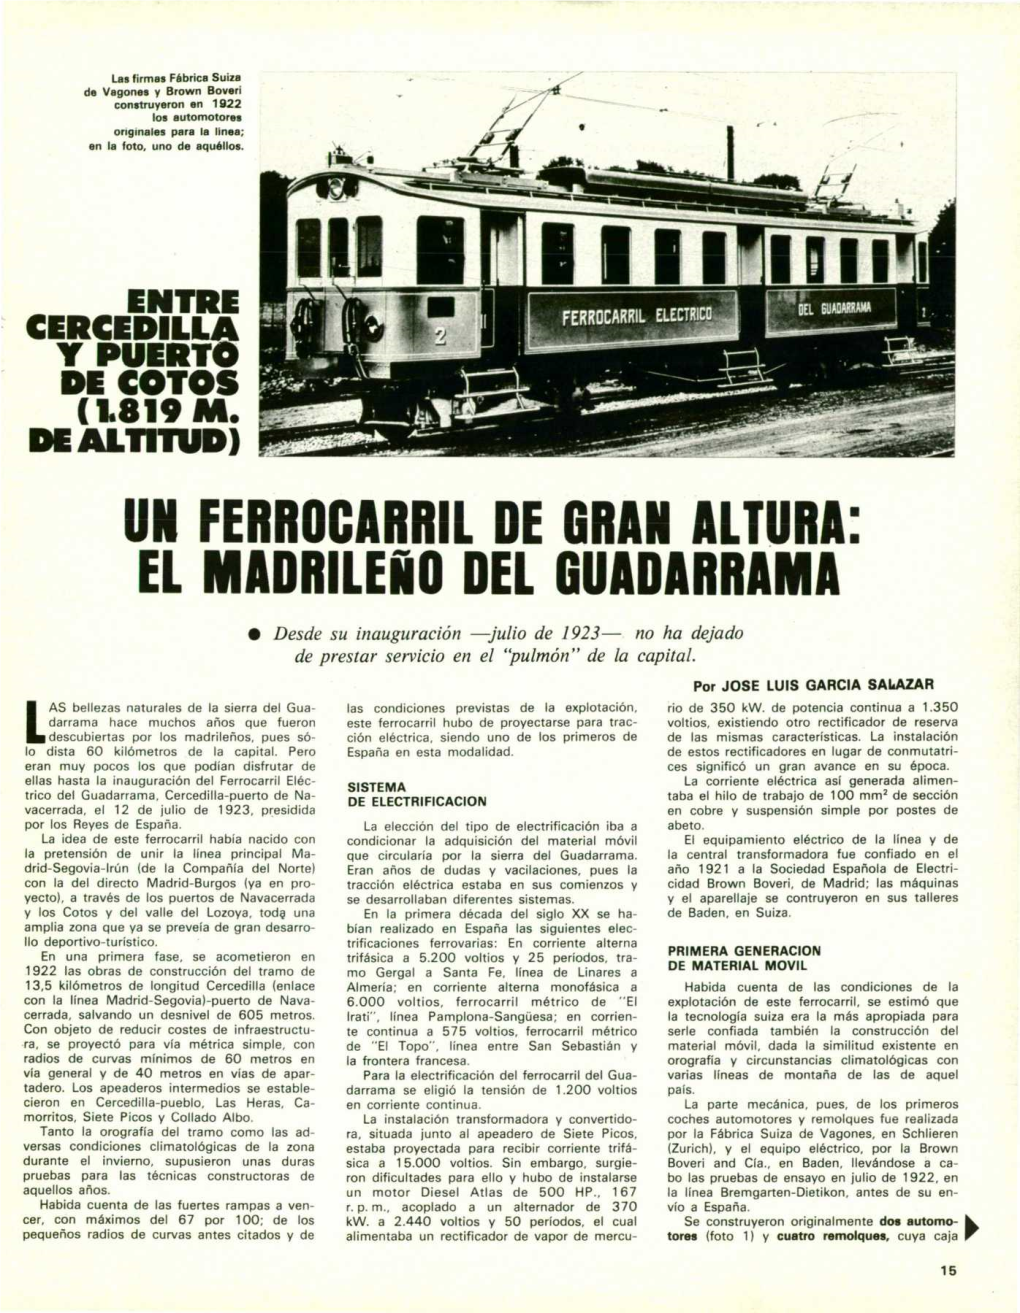 Un Ferrocarril De Gran Altura: El Madrileño Del Guadarrama